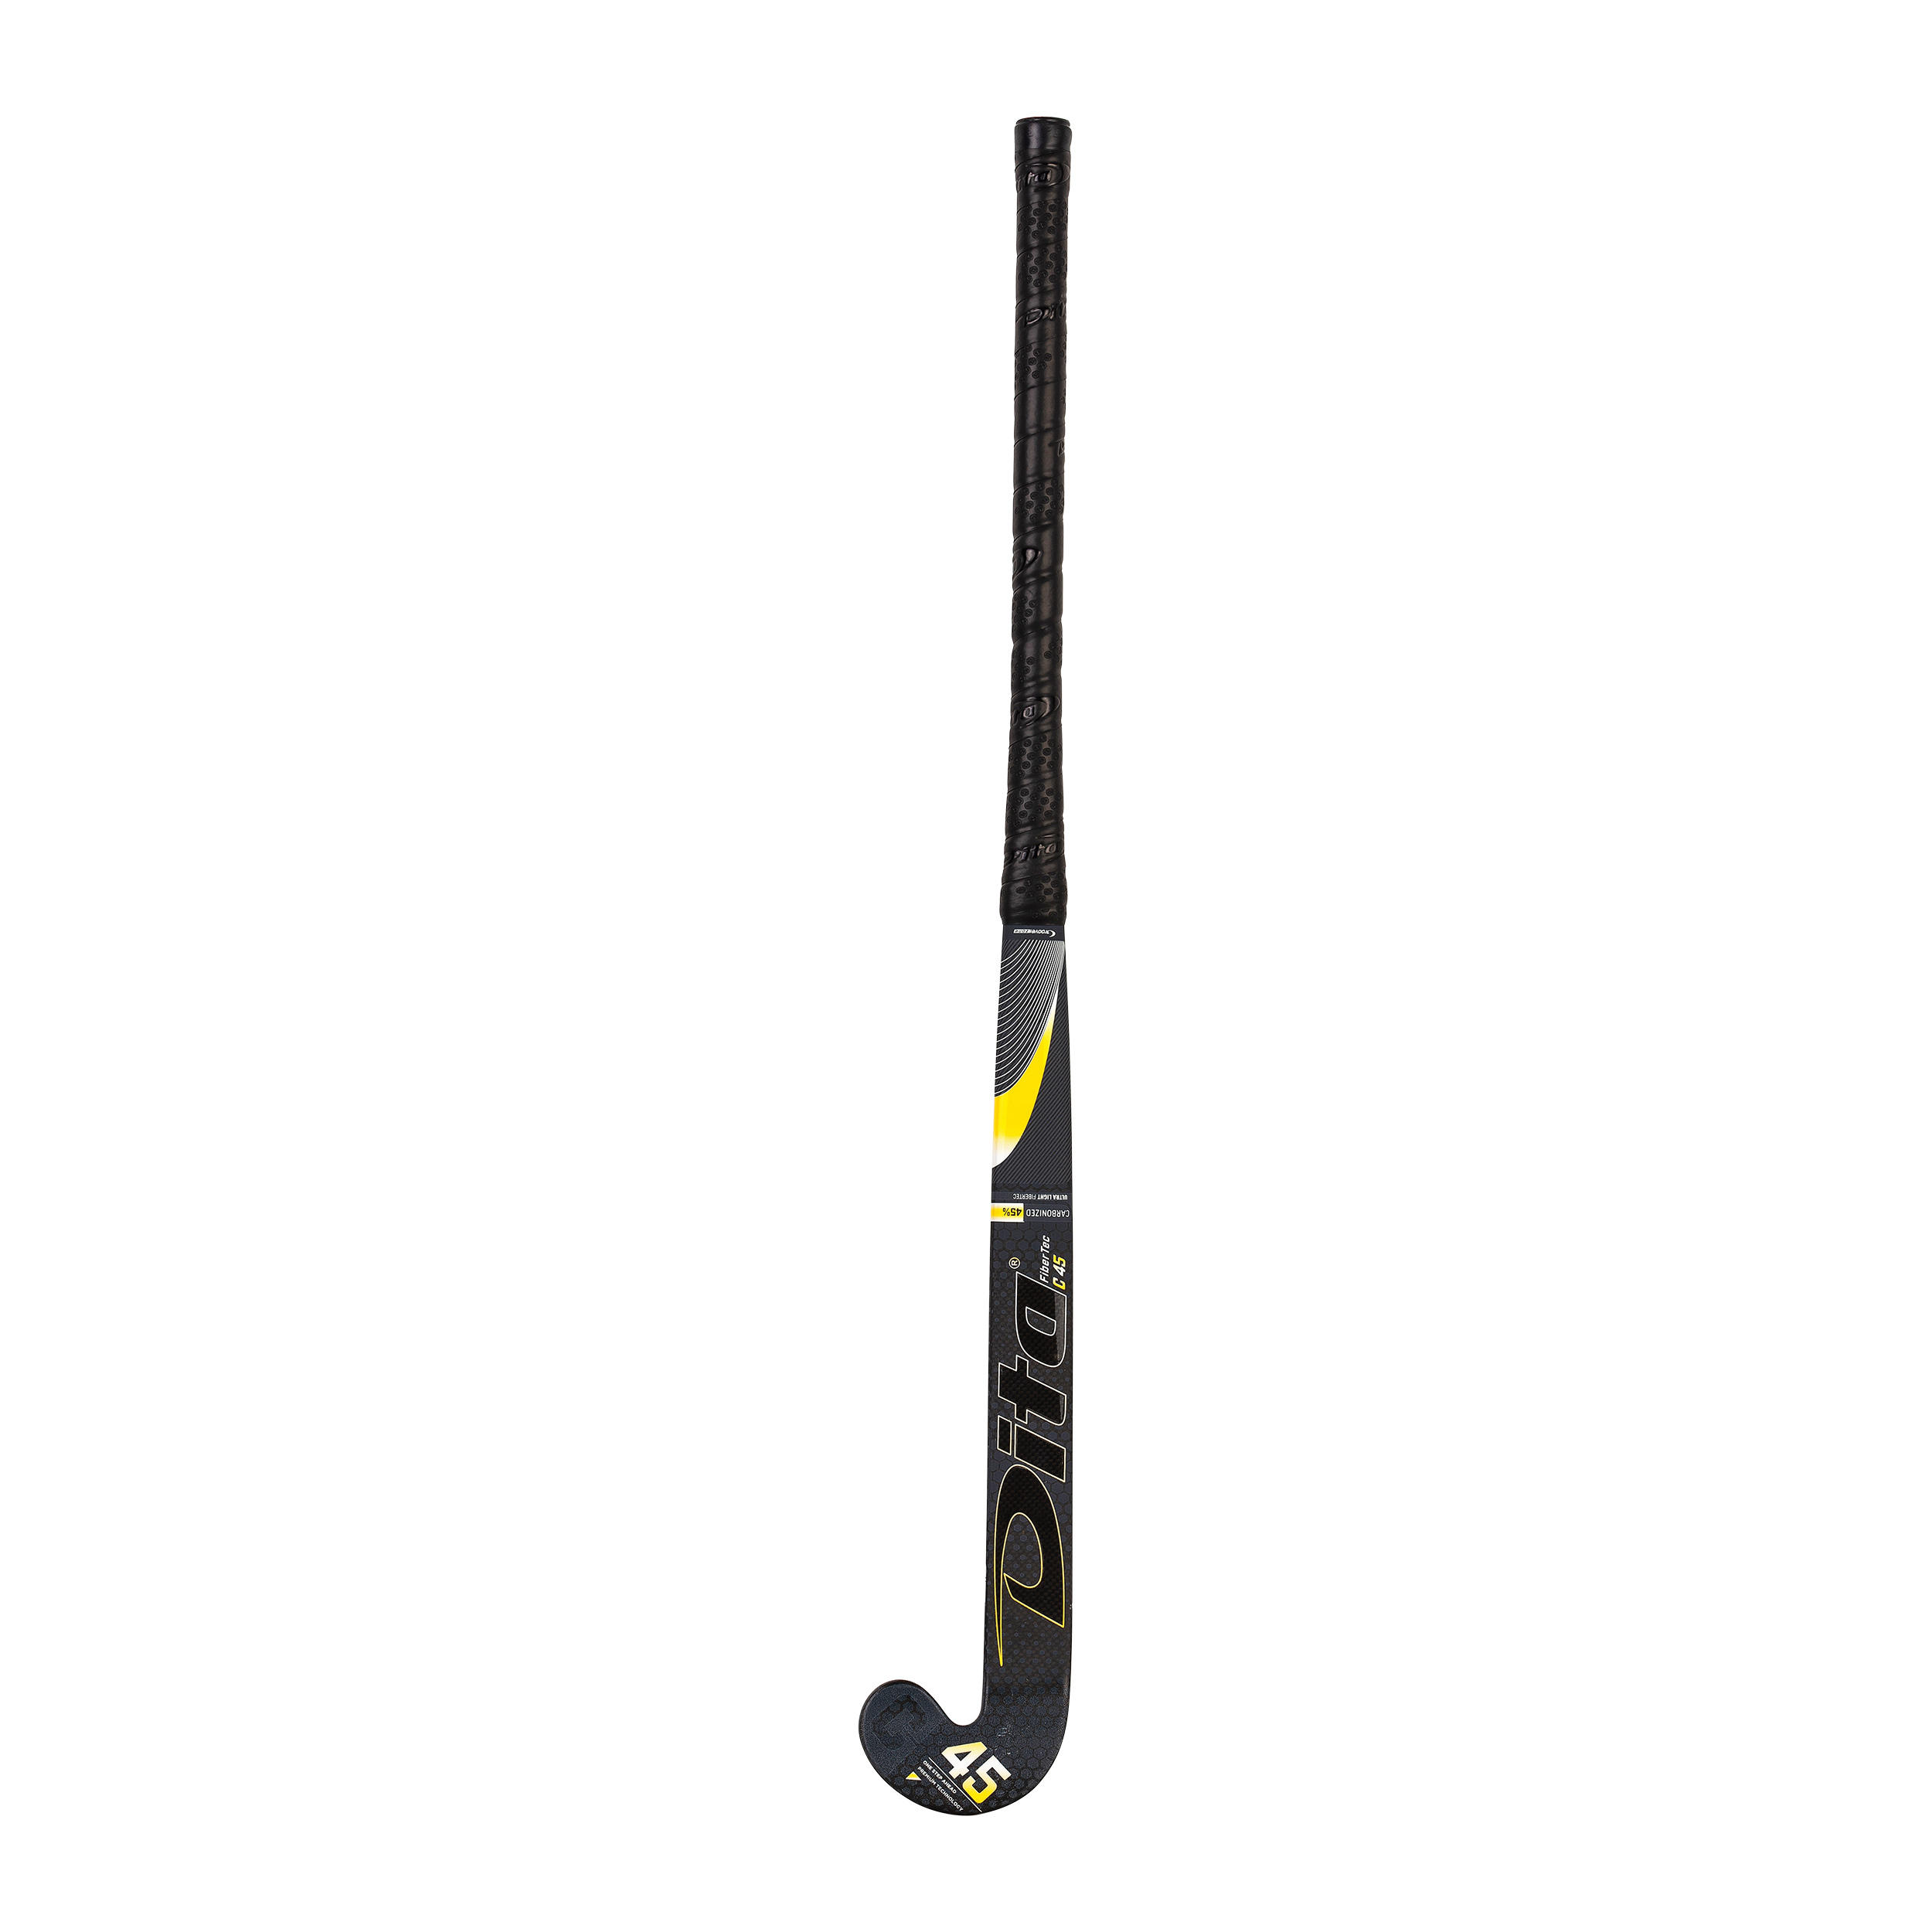 Adult Intermediate 45% Carbon Low Bow Field Hockey Stick FiberTec - Black/Gold 5/12